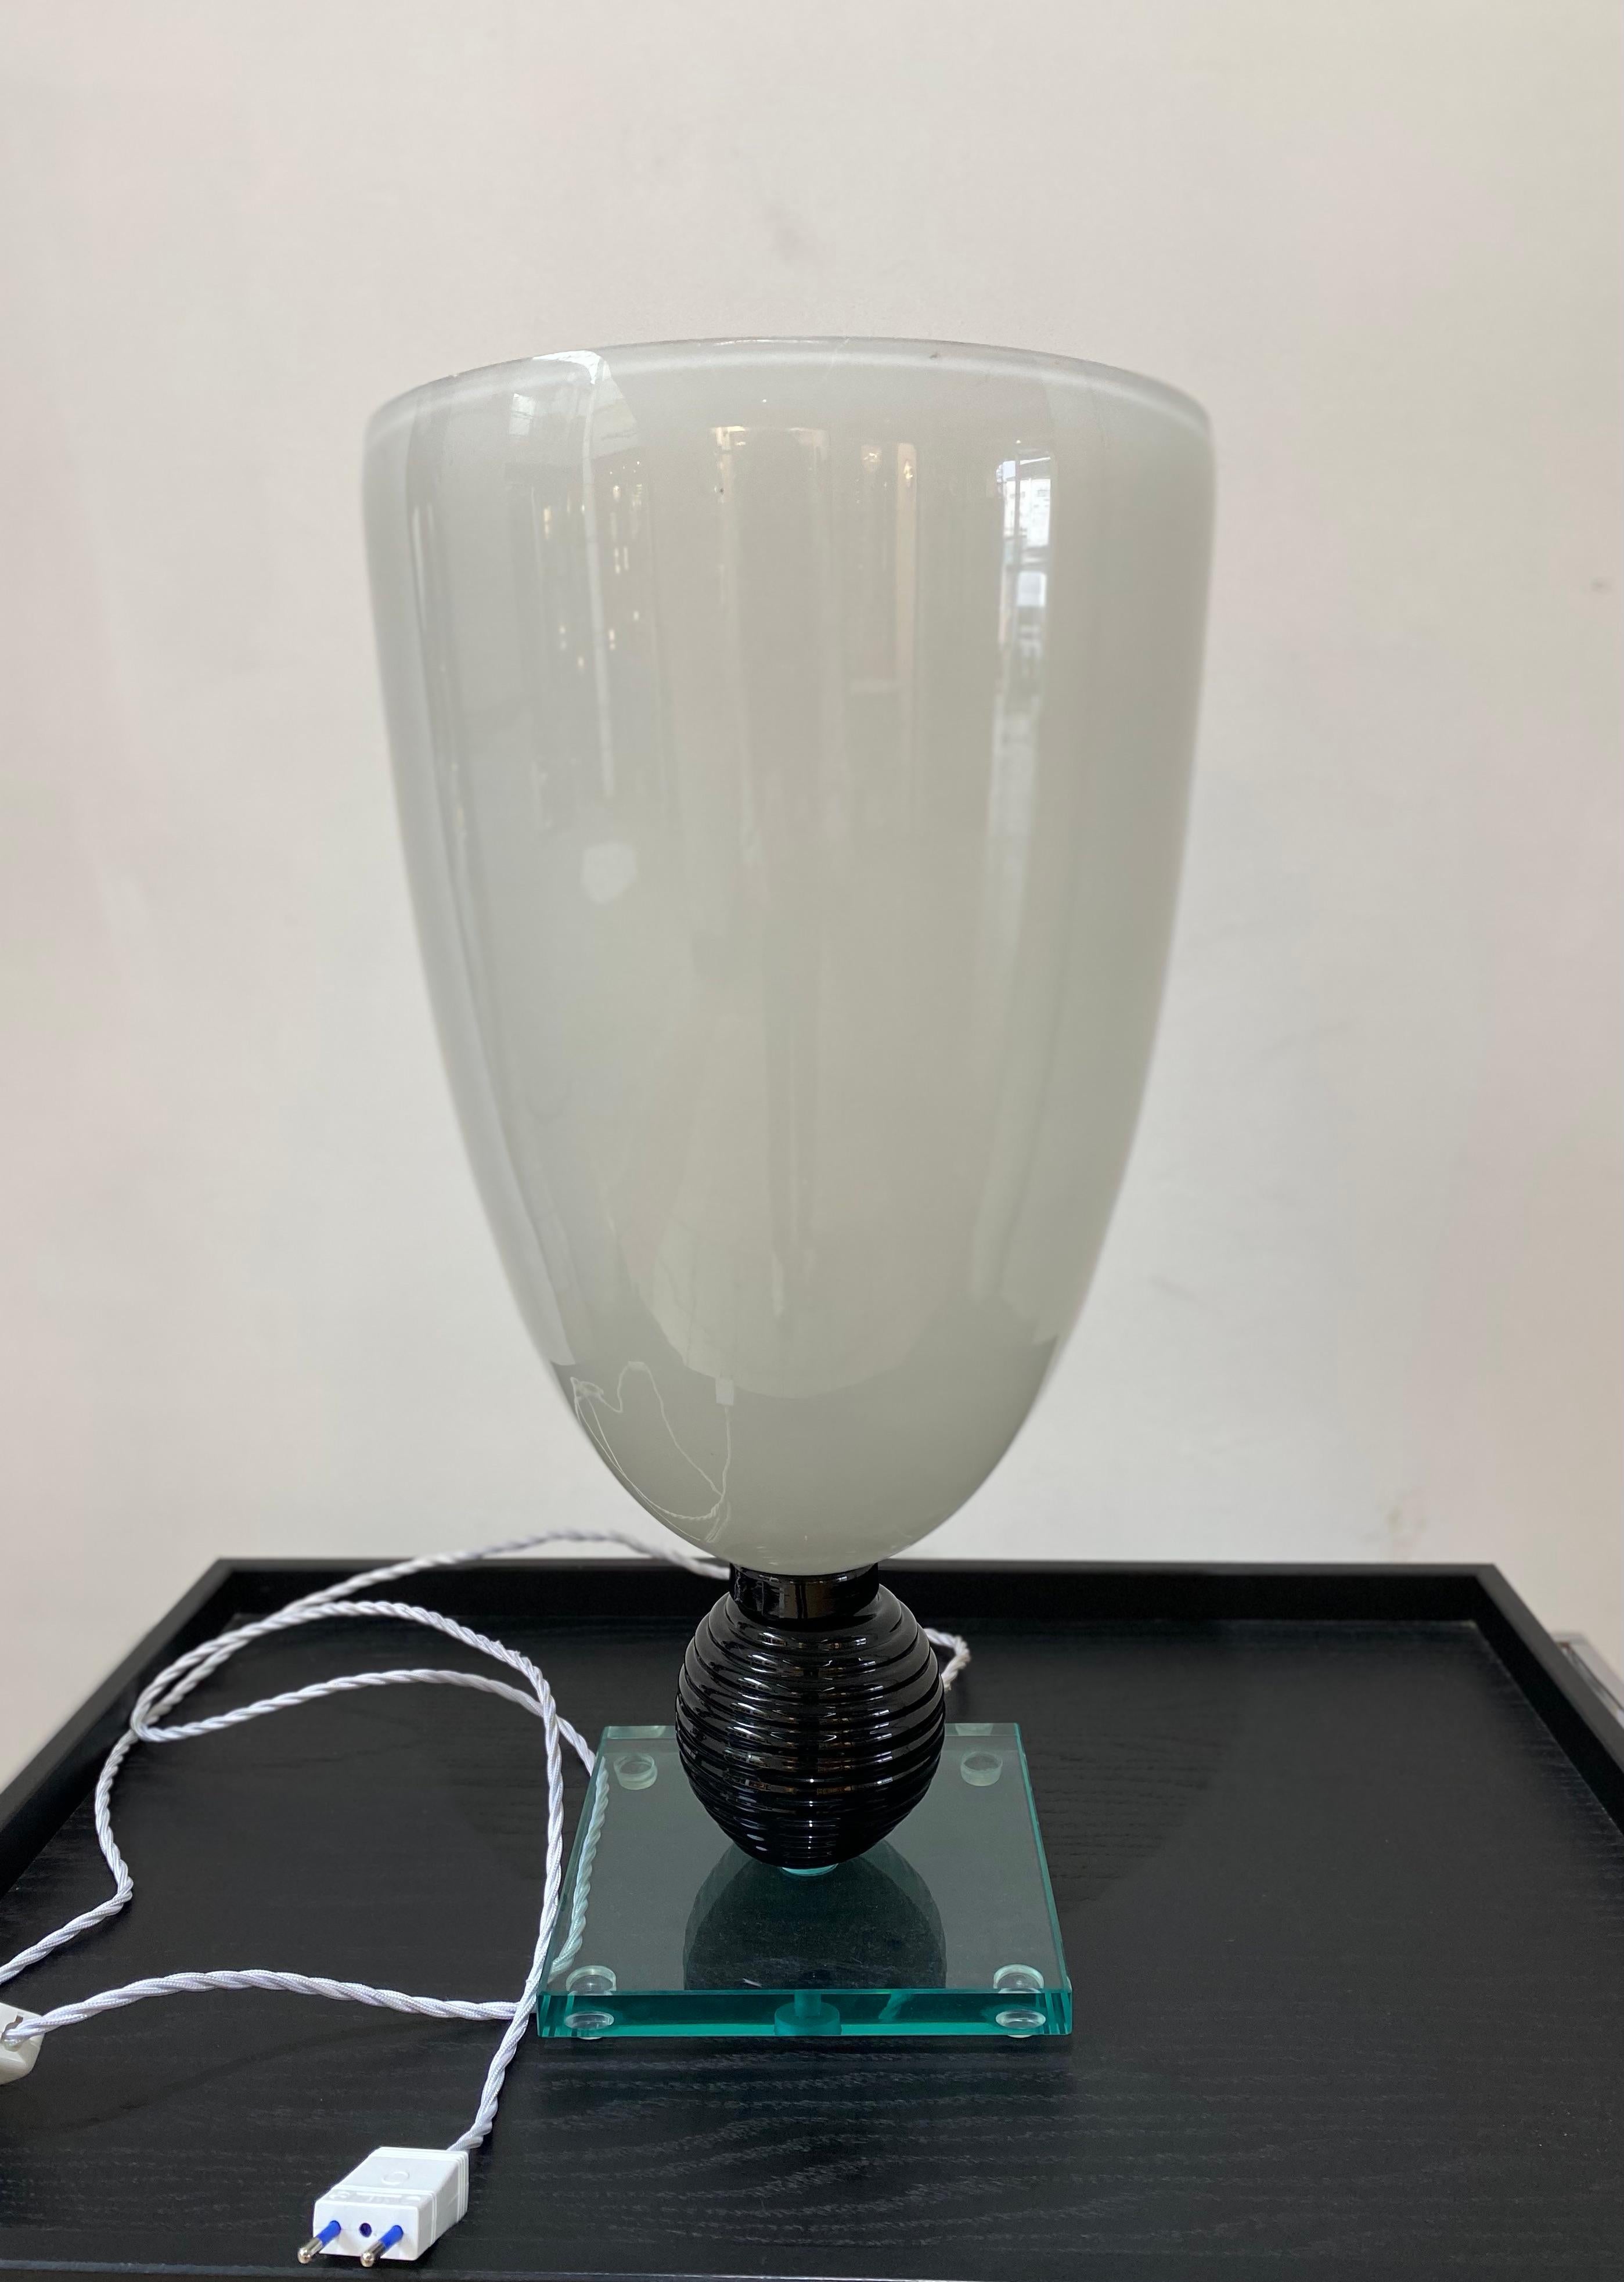 Weiße Lampe aus Muranoglas
CIRCA: 1980
Abmessungen: Höhe: 57 cm, Durchmesser: 29,5 cm, 
EU-Stecker
Ref : c 1894/15
Preis : 1600€ für diese Lampe.